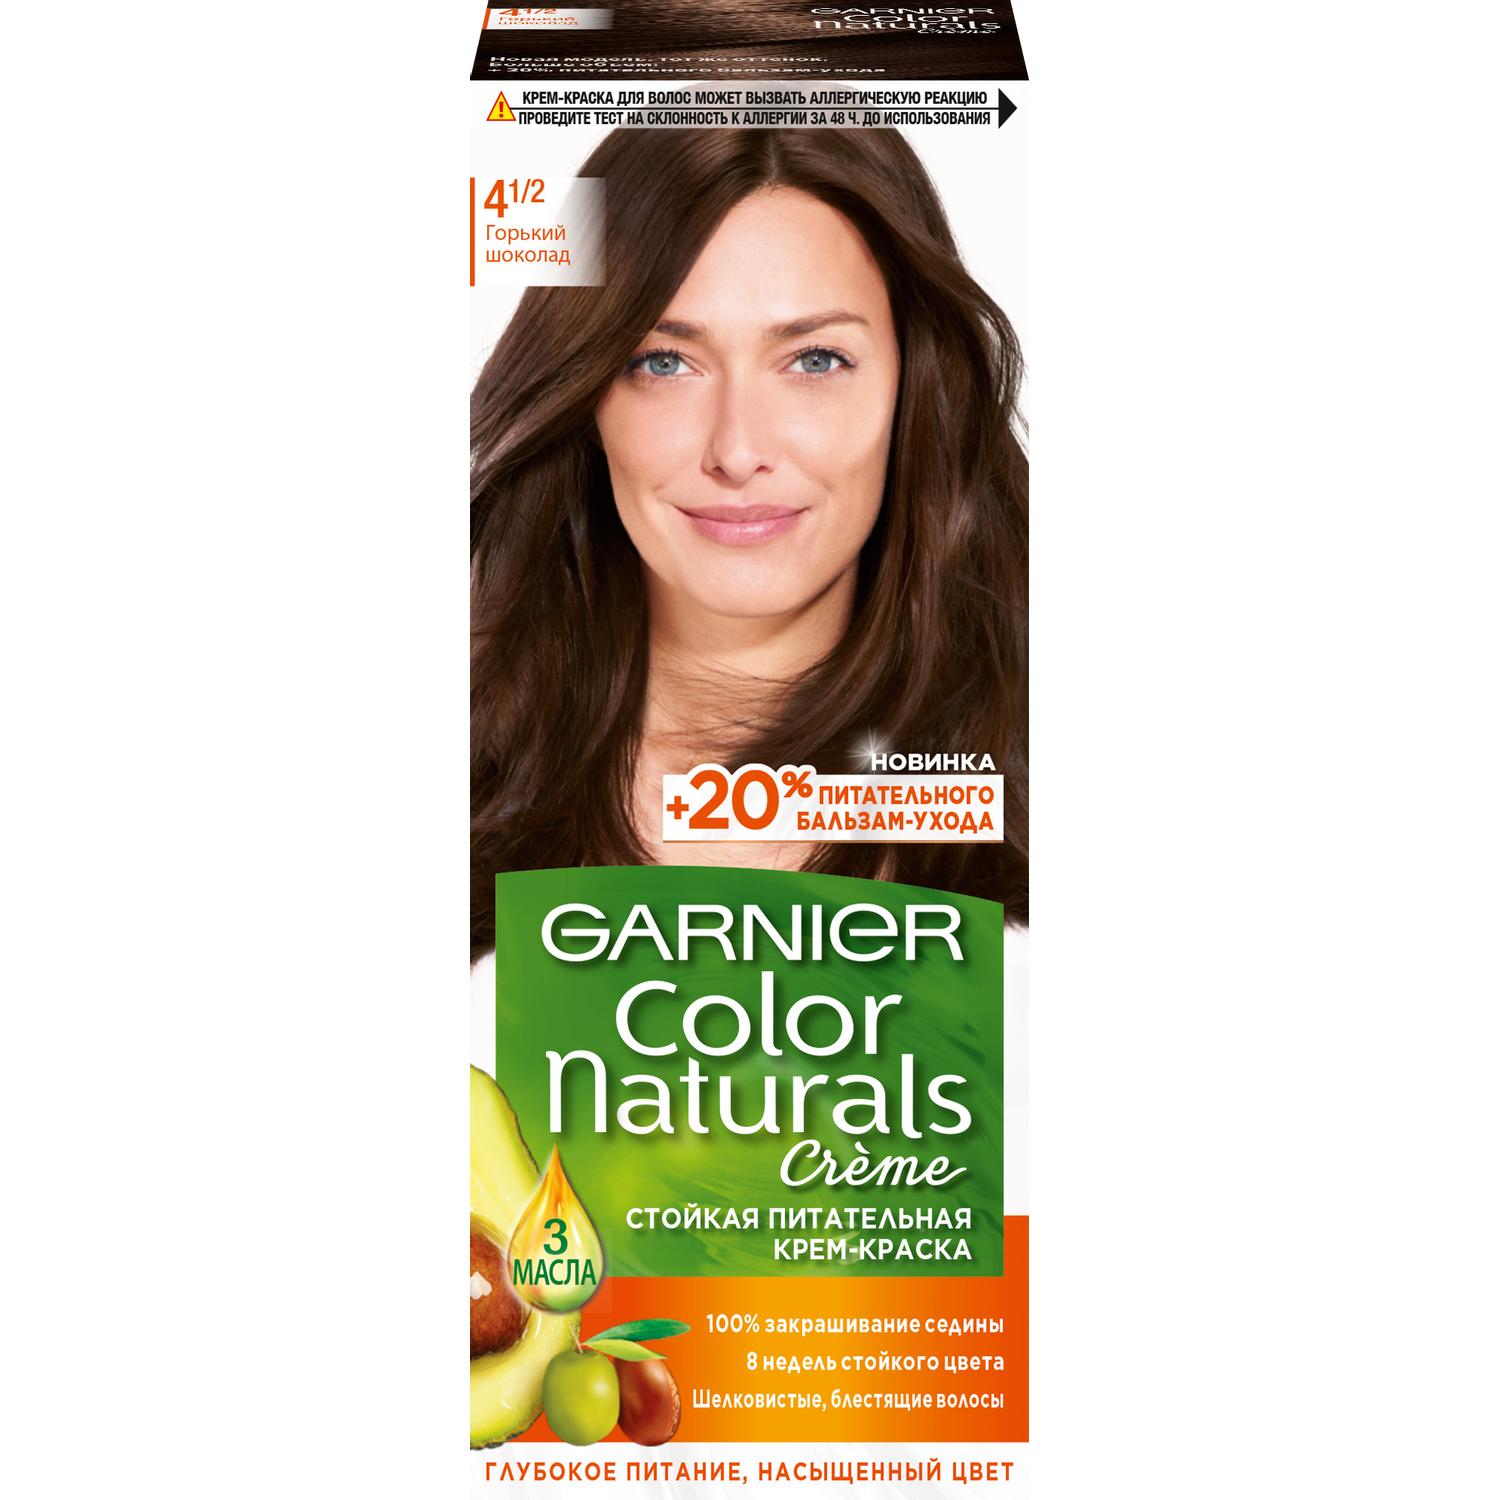 Крем-краска для волос Garnier Color Naturals 4.1/2 Горький Шоколад 110 мл крем краска для волос garnier color naturals 4 00 глубокий темно каштановый 110 мл